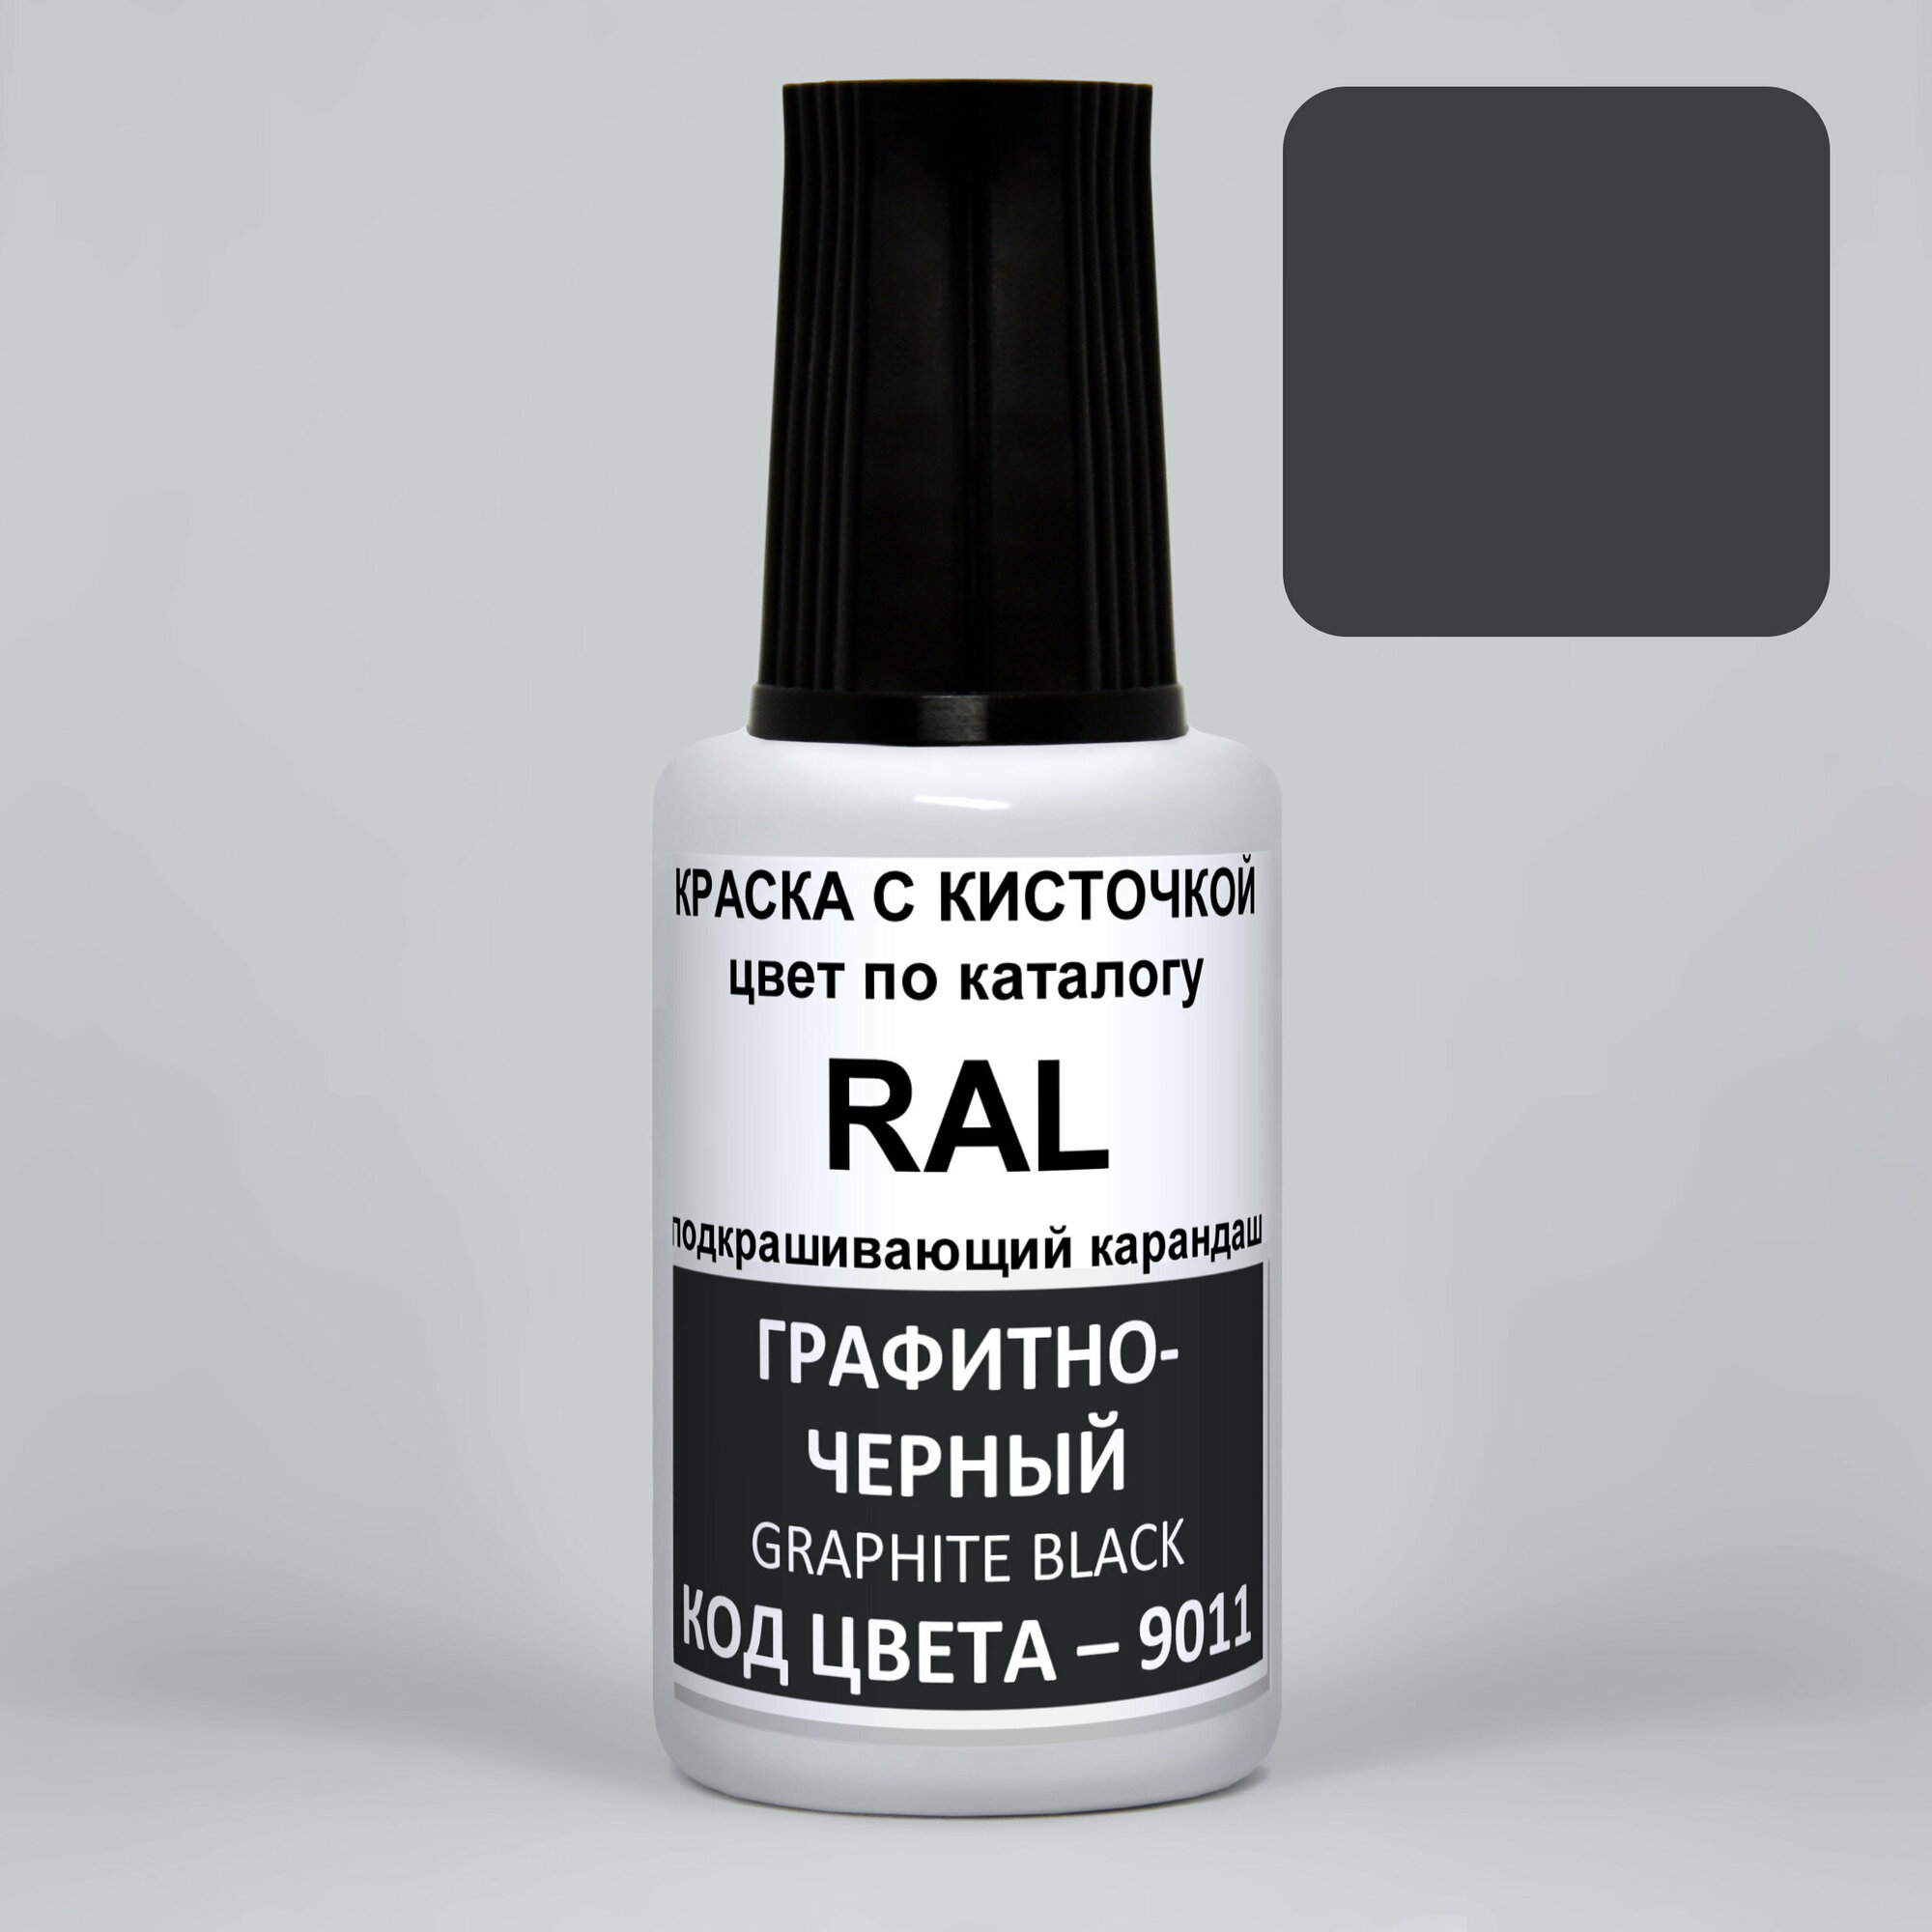 Акриловая краска для мебели и декора, PODKRASKA, 9011 RAL Черно-графитовый, Graphite Black, 20мл